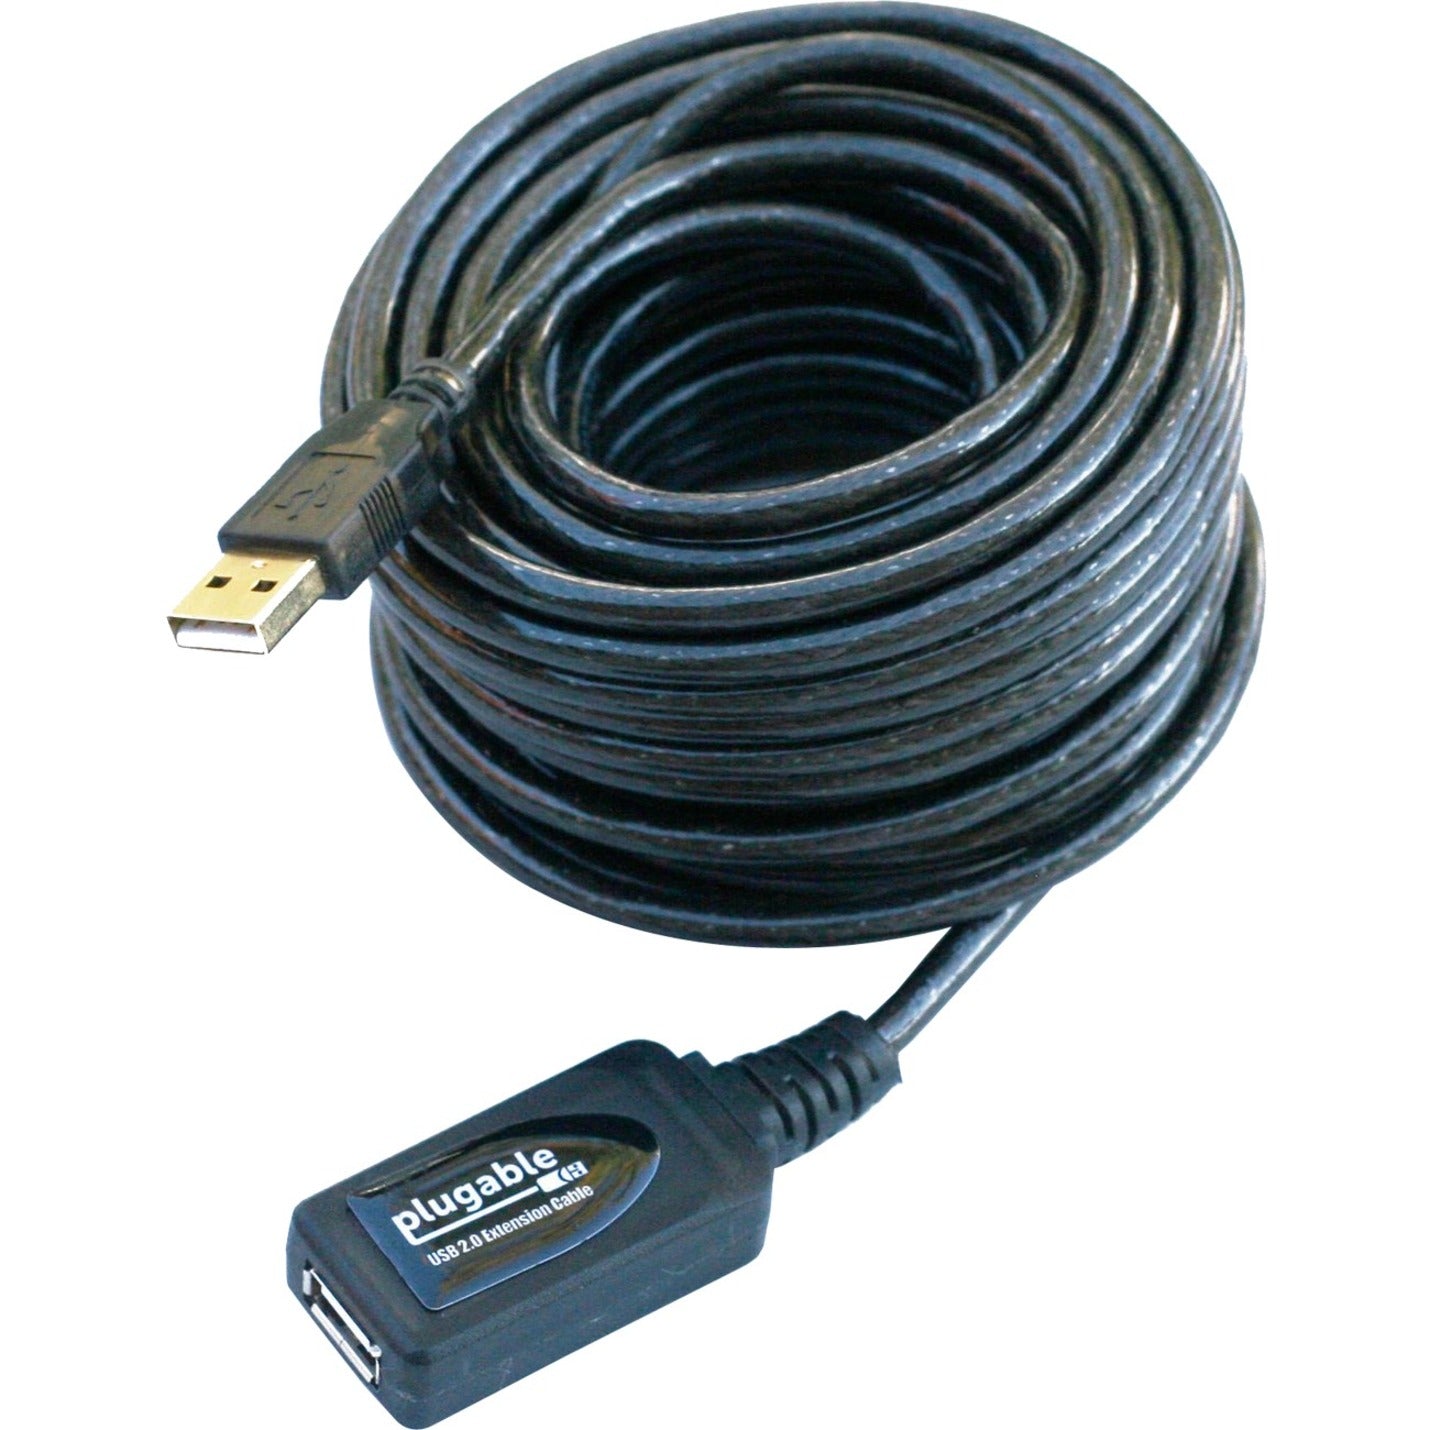 Cable de extensión activa Plugable USB2-10M USB 2.0 (10m/32ft) Repetidor Velocidad de transferencia de datos de 480 Mbit/s